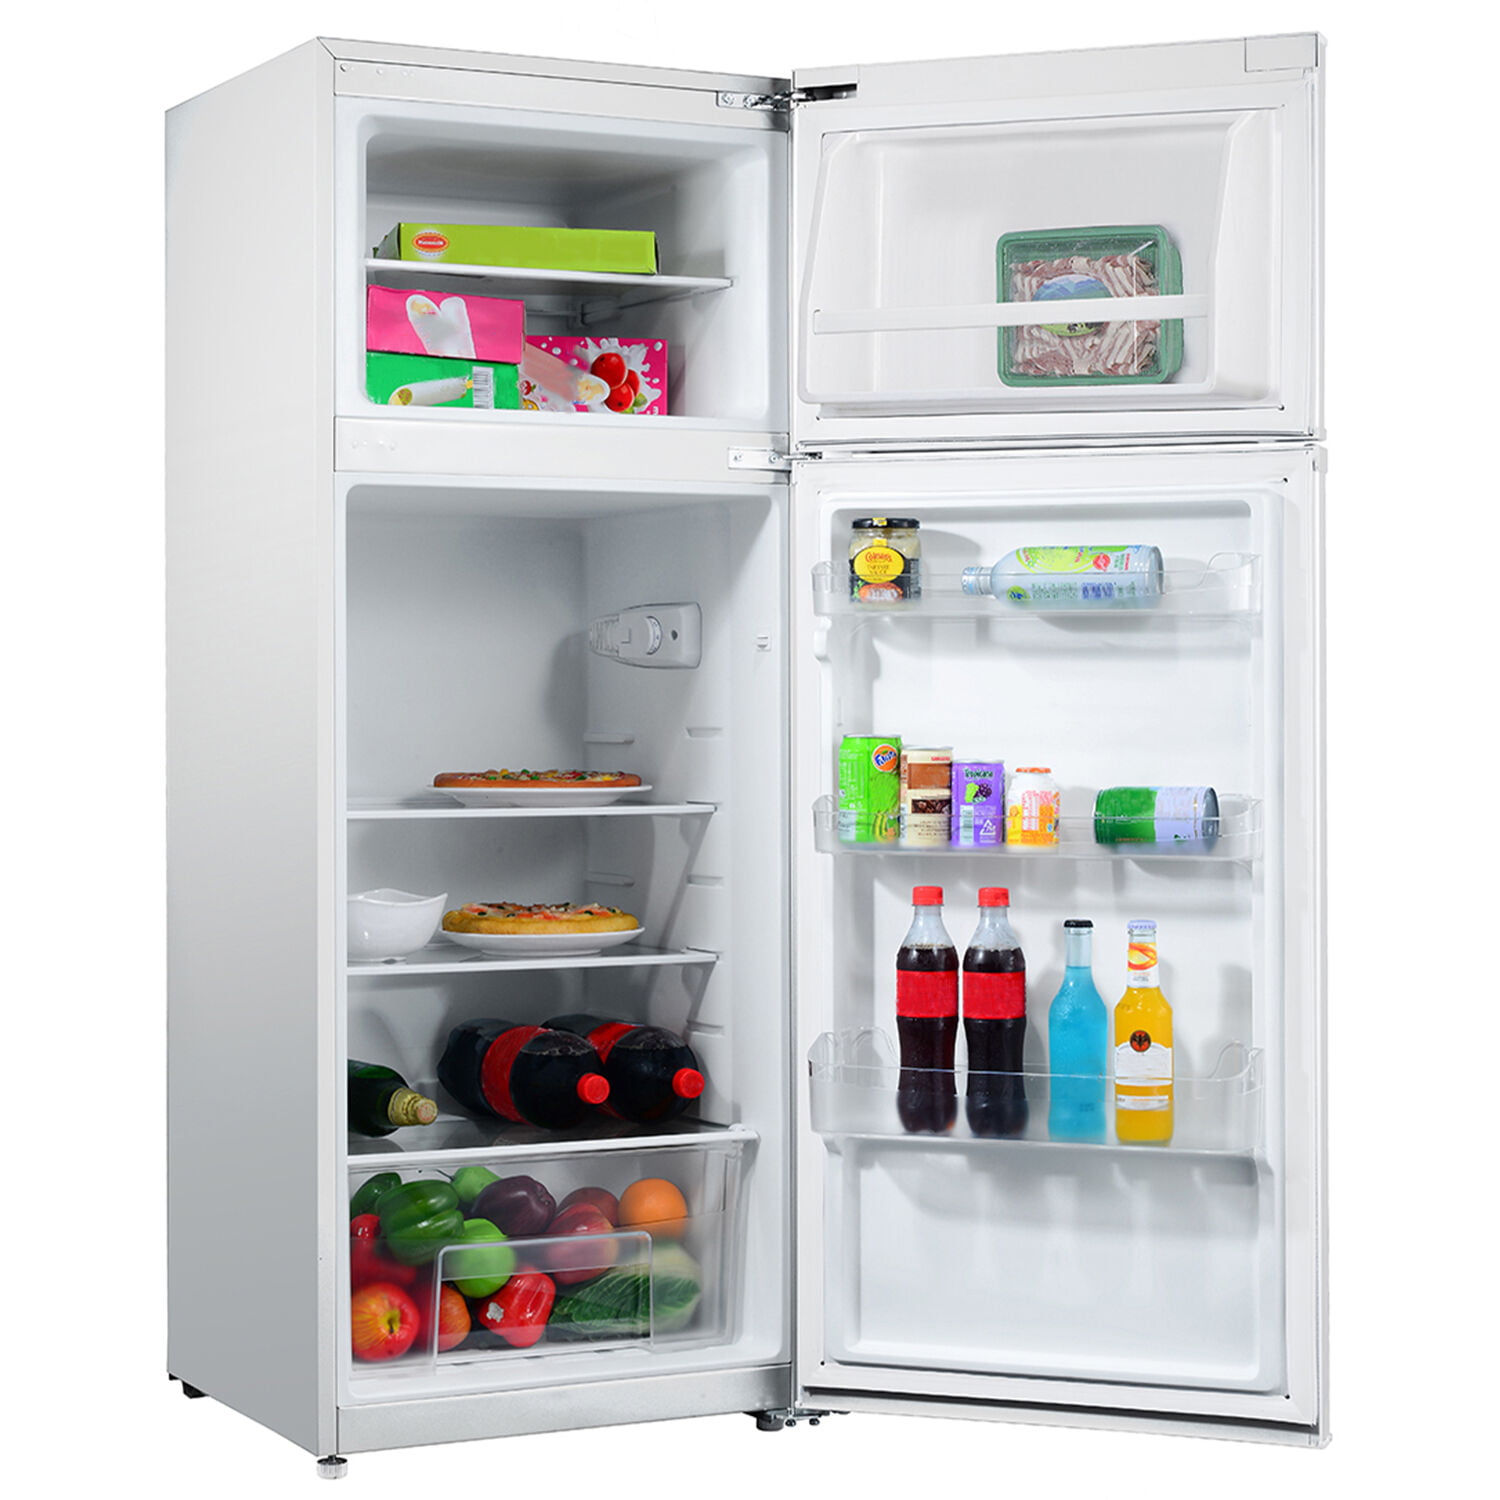 06 холодильник. Galanz Retro Compact Refrigerator. Ideal large холодильник. Large холодильник UBC. Fridge Vivax.